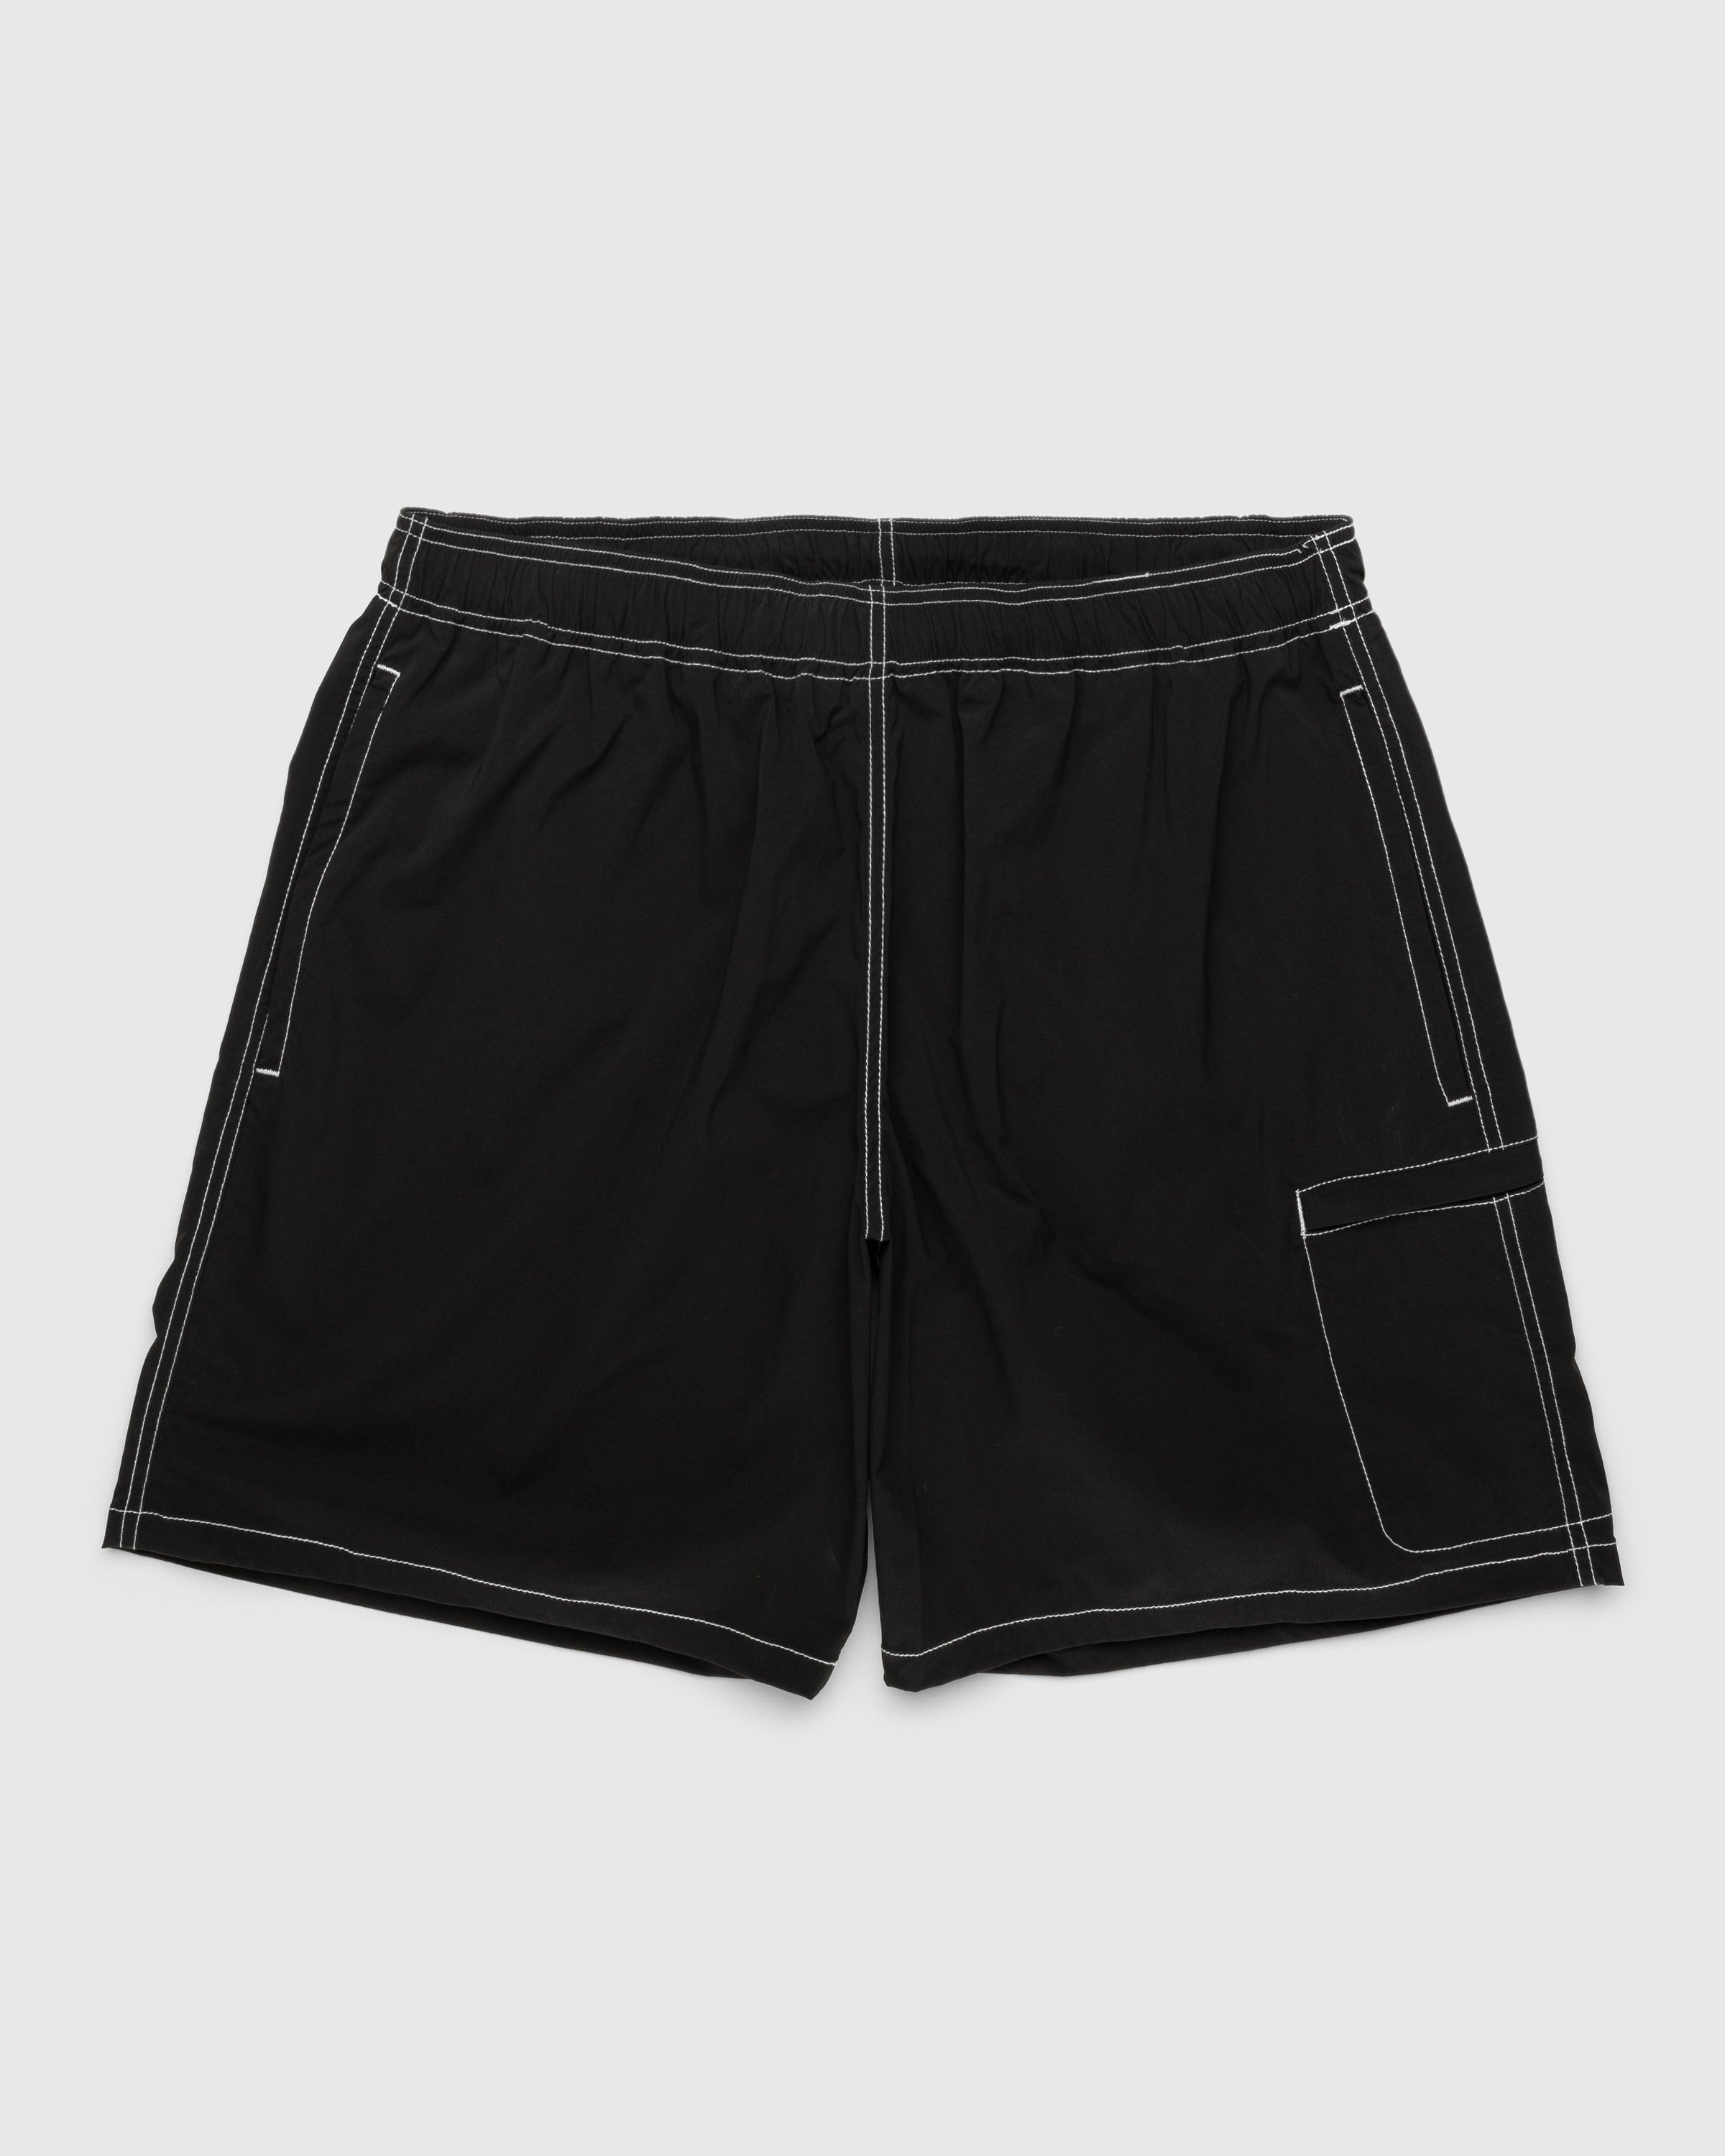 Highsnobiety – Side Cargo Shorts Charcoal Black - Active Shorts - Black - Image 1